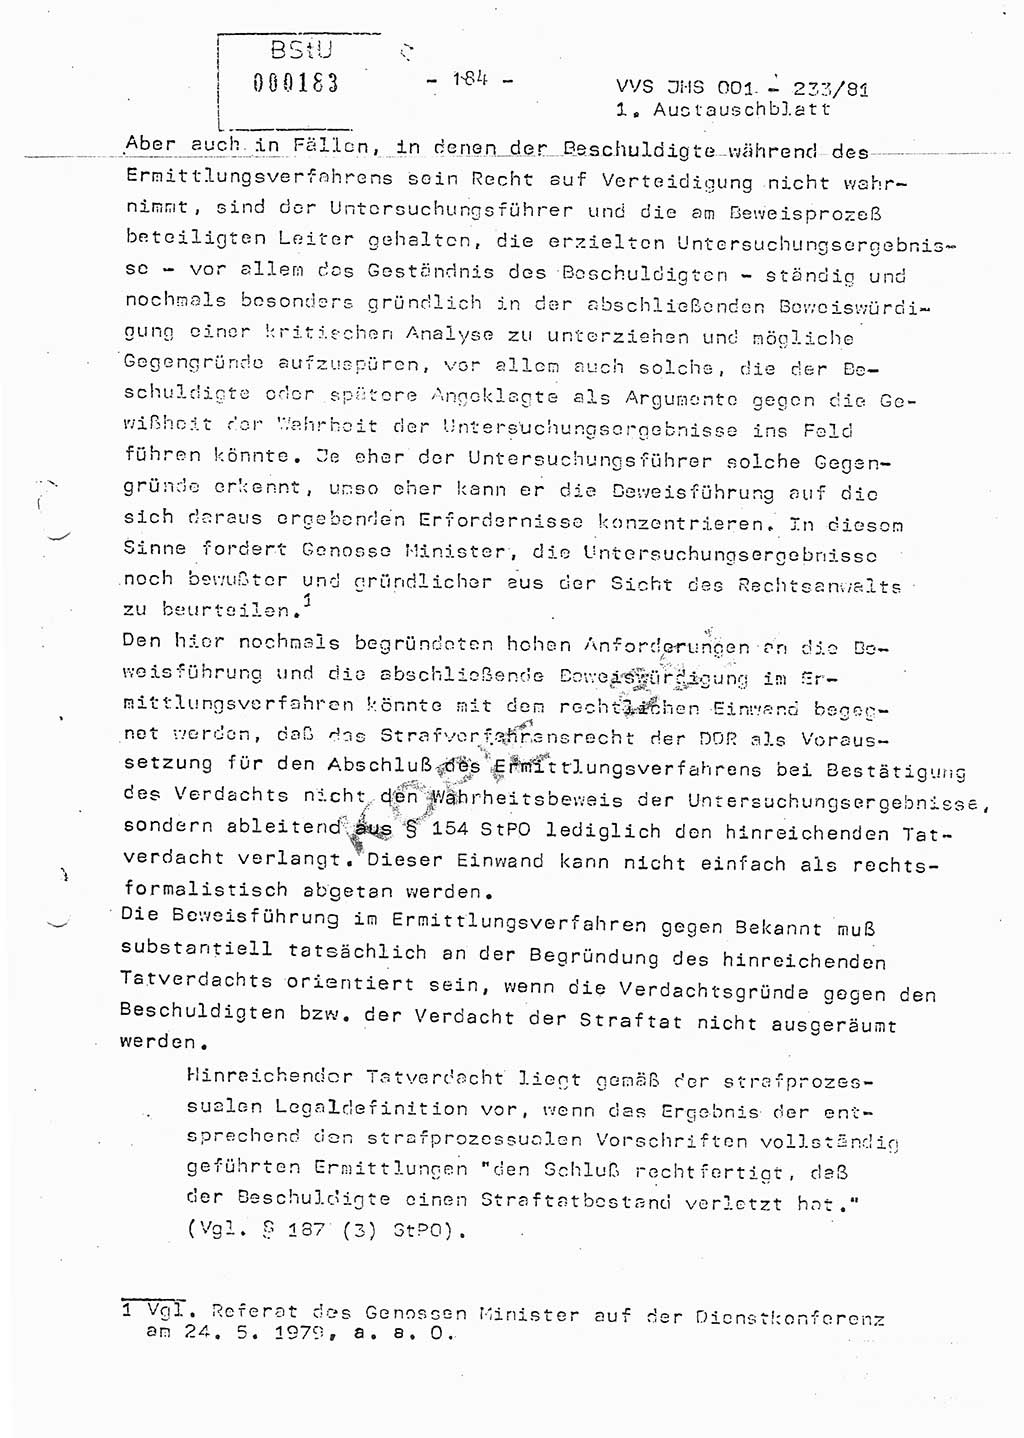 Dissertation Oberstleutnant Horst Zank (JHS), Oberstleutnant Dr. Karl-Heinz Knoblauch (JHS), Oberstleutnant Gustav-Adolf Kowalewski (HA Ⅸ), Oberstleutnant Wolfgang Plötner (HA Ⅸ), Ministerium für Staatssicherheit (MfS) [Deutsche Demokratische Republik (DDR)], Juristische Hochschule (JHS), Vertrauliche Verschlußsache (VVS) o001-233/81, Potsdam 1981, Blatt 184 (Diss. MfS DDR JHS VVS o001-233/81 1981, Bl. 184)